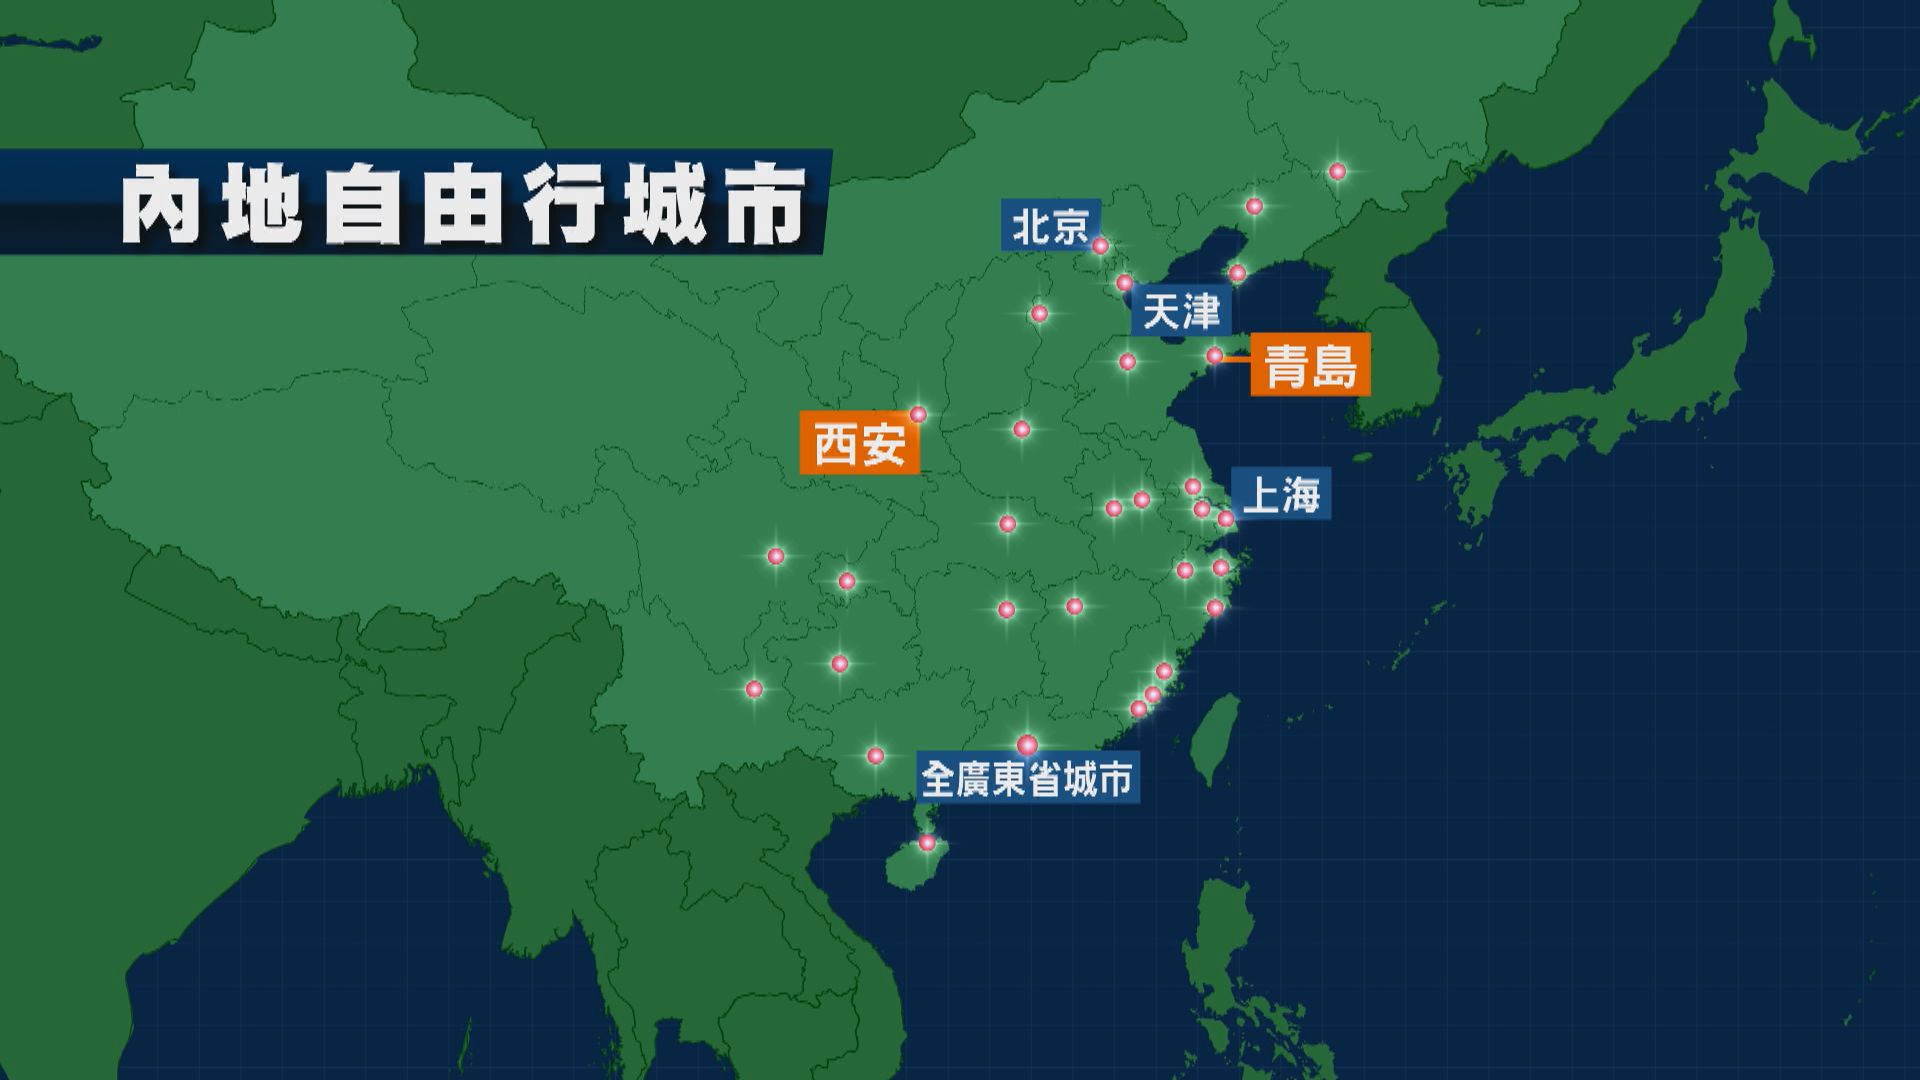 西安及青島下月六日起新增為自由行城市 李家超感謝中央支持